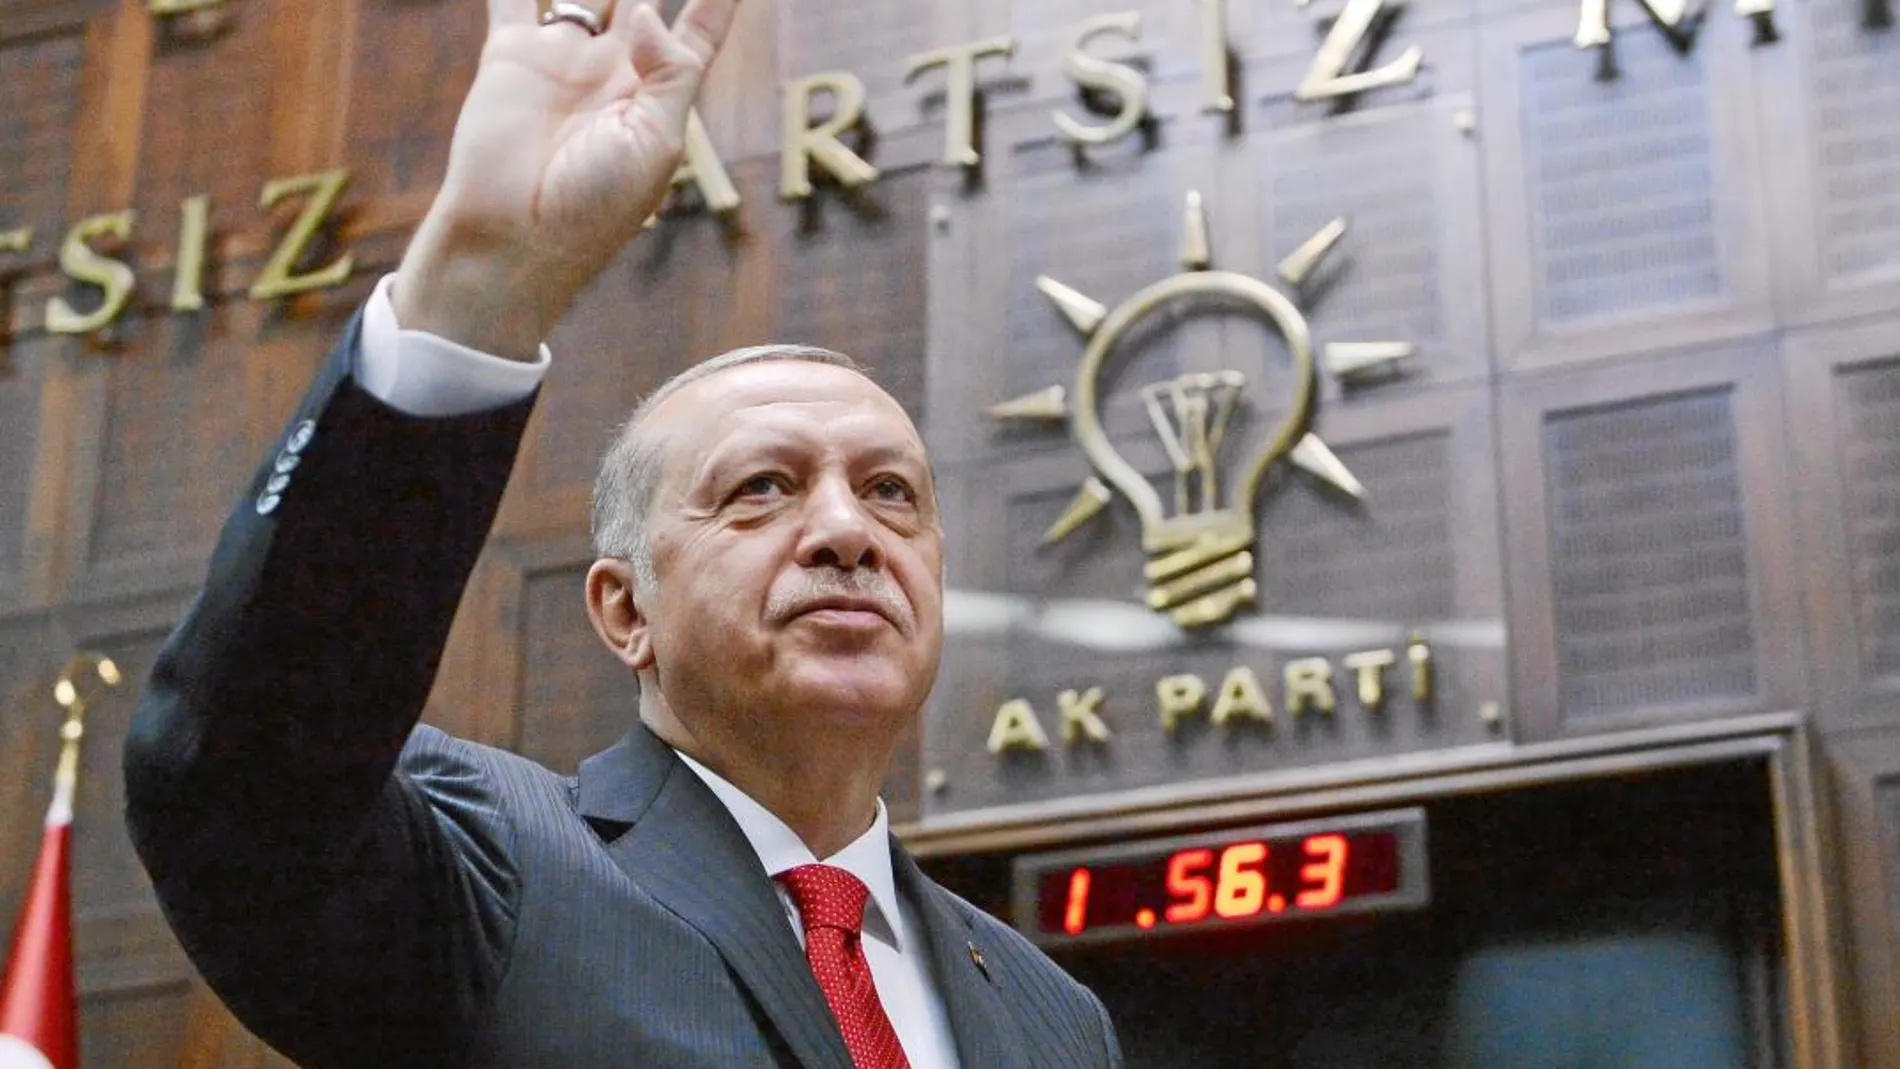 El presidente Recep Tayyip Erdogan en una reunión de su partido, el AKP, celebrada el sábado en Ankara